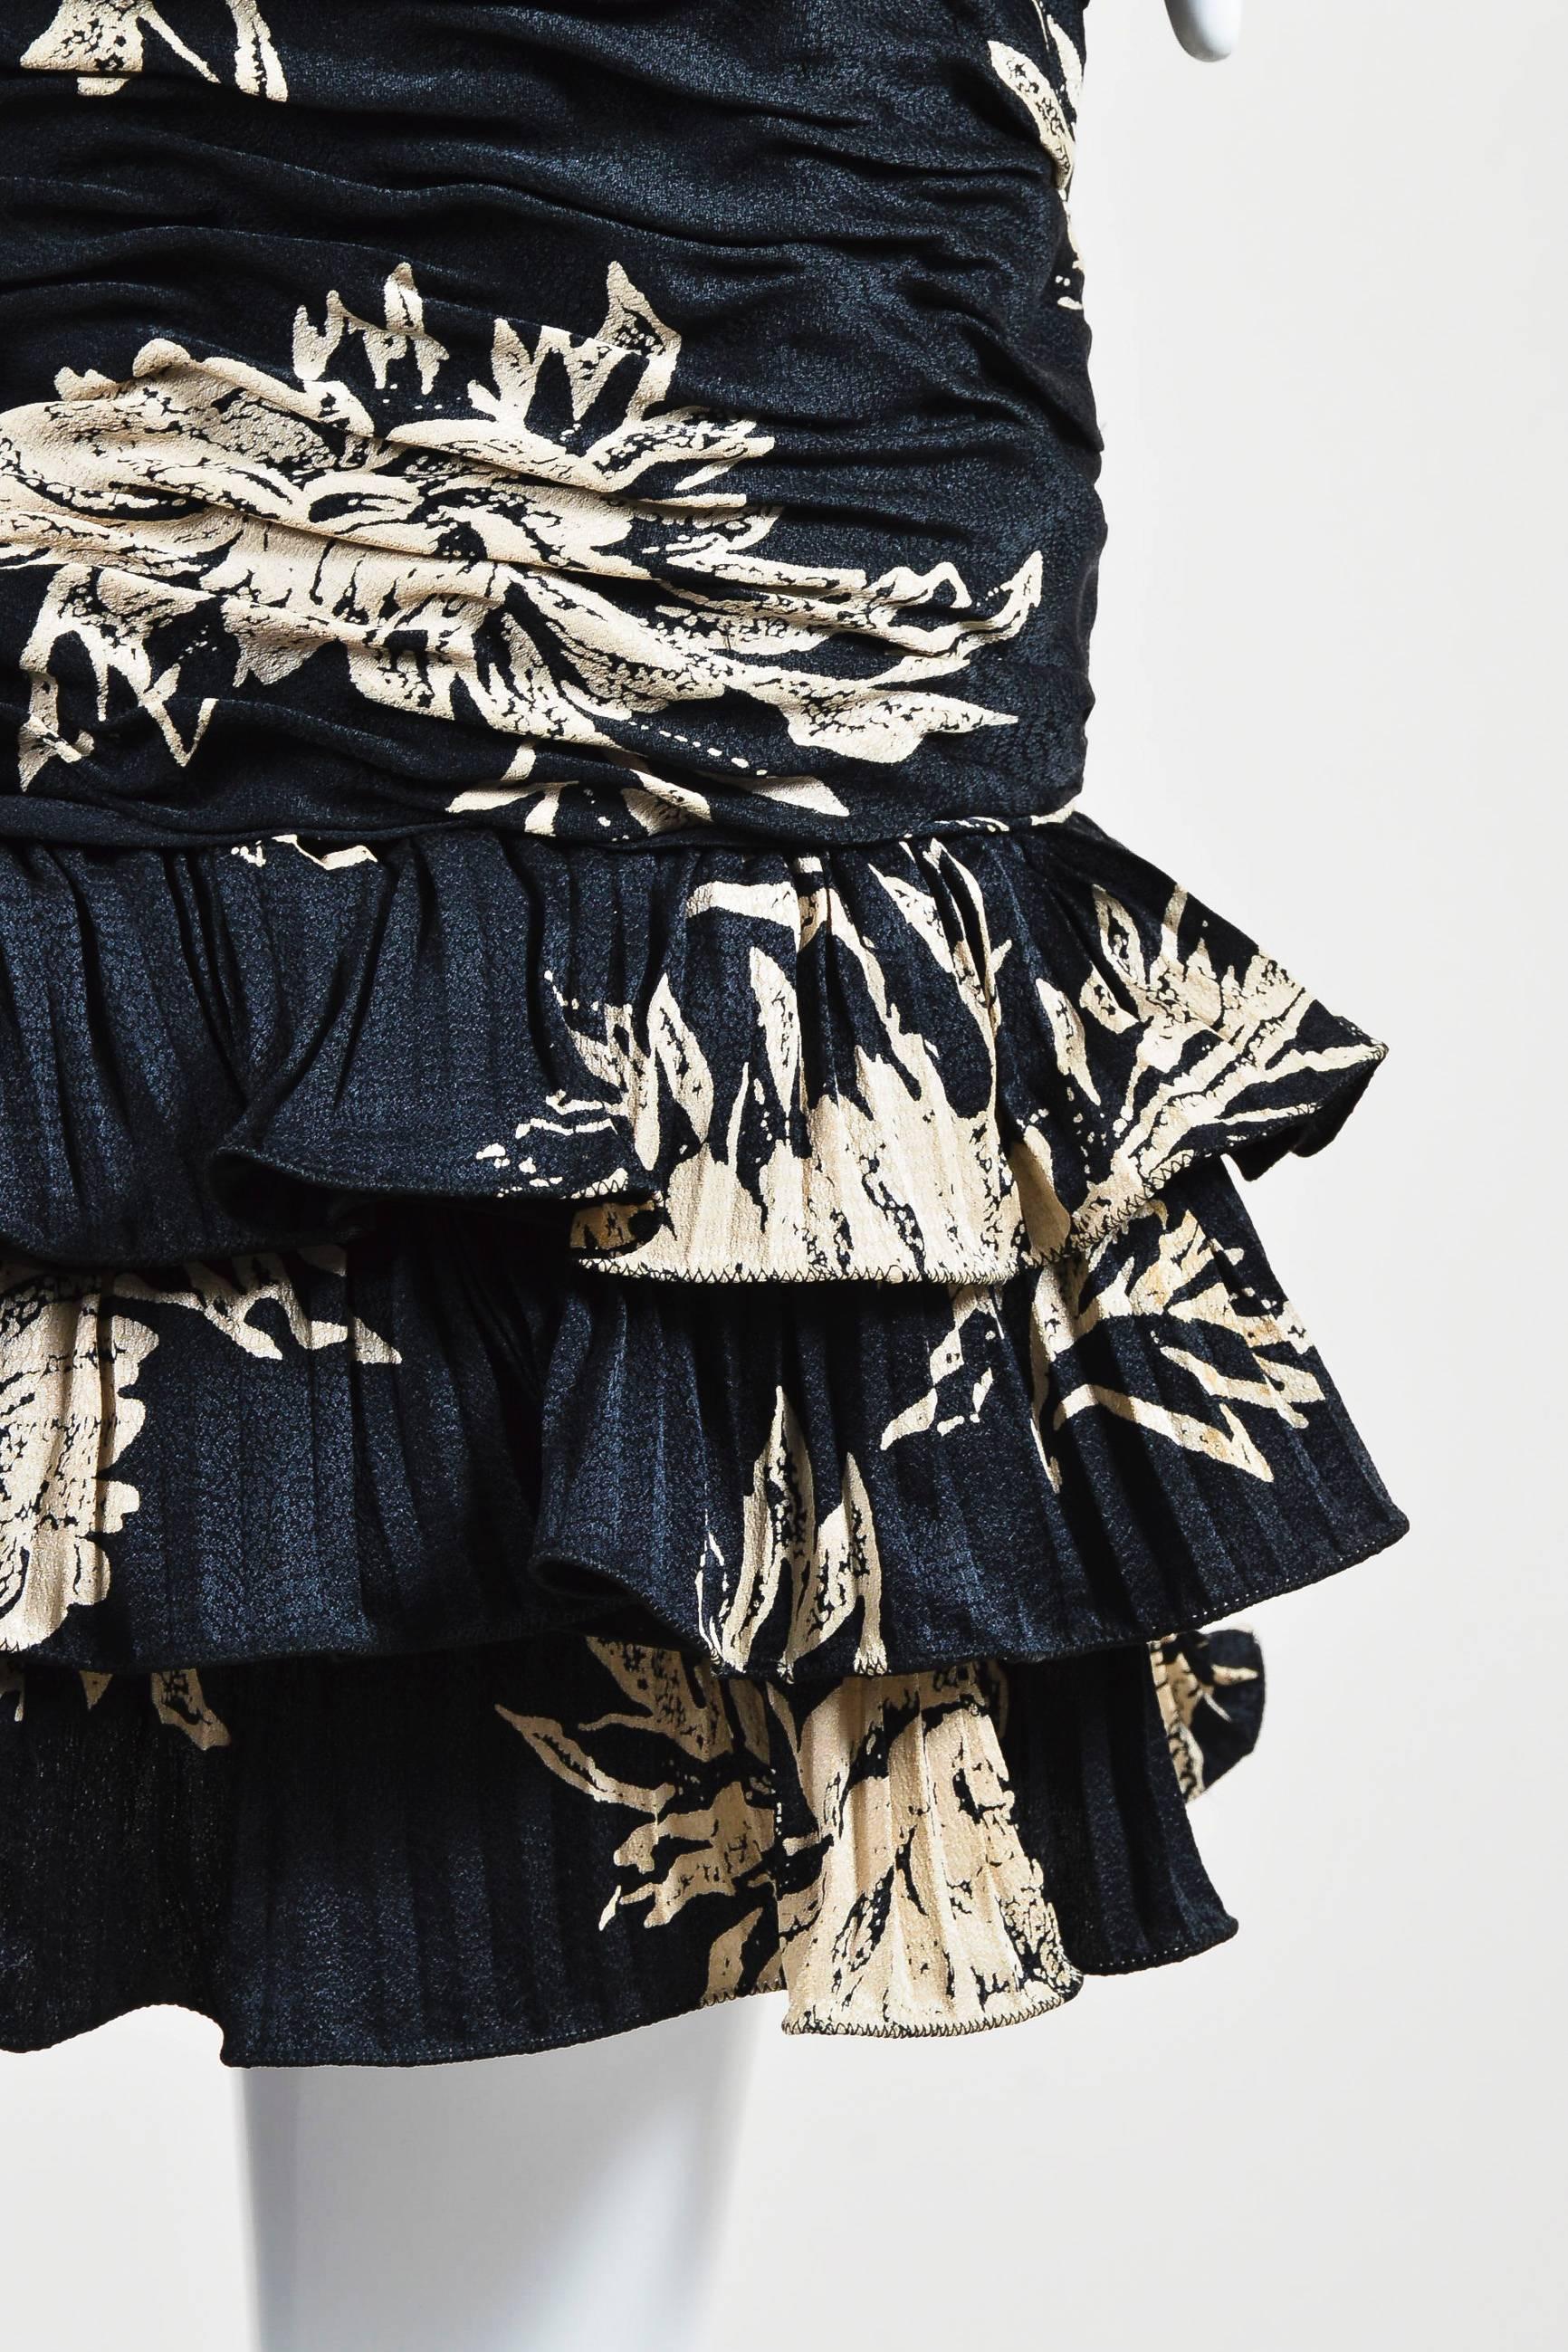 Women's Vintage Emanuel Ungaro Parallele Black Floral Print Ruched LS Buttoned Dress